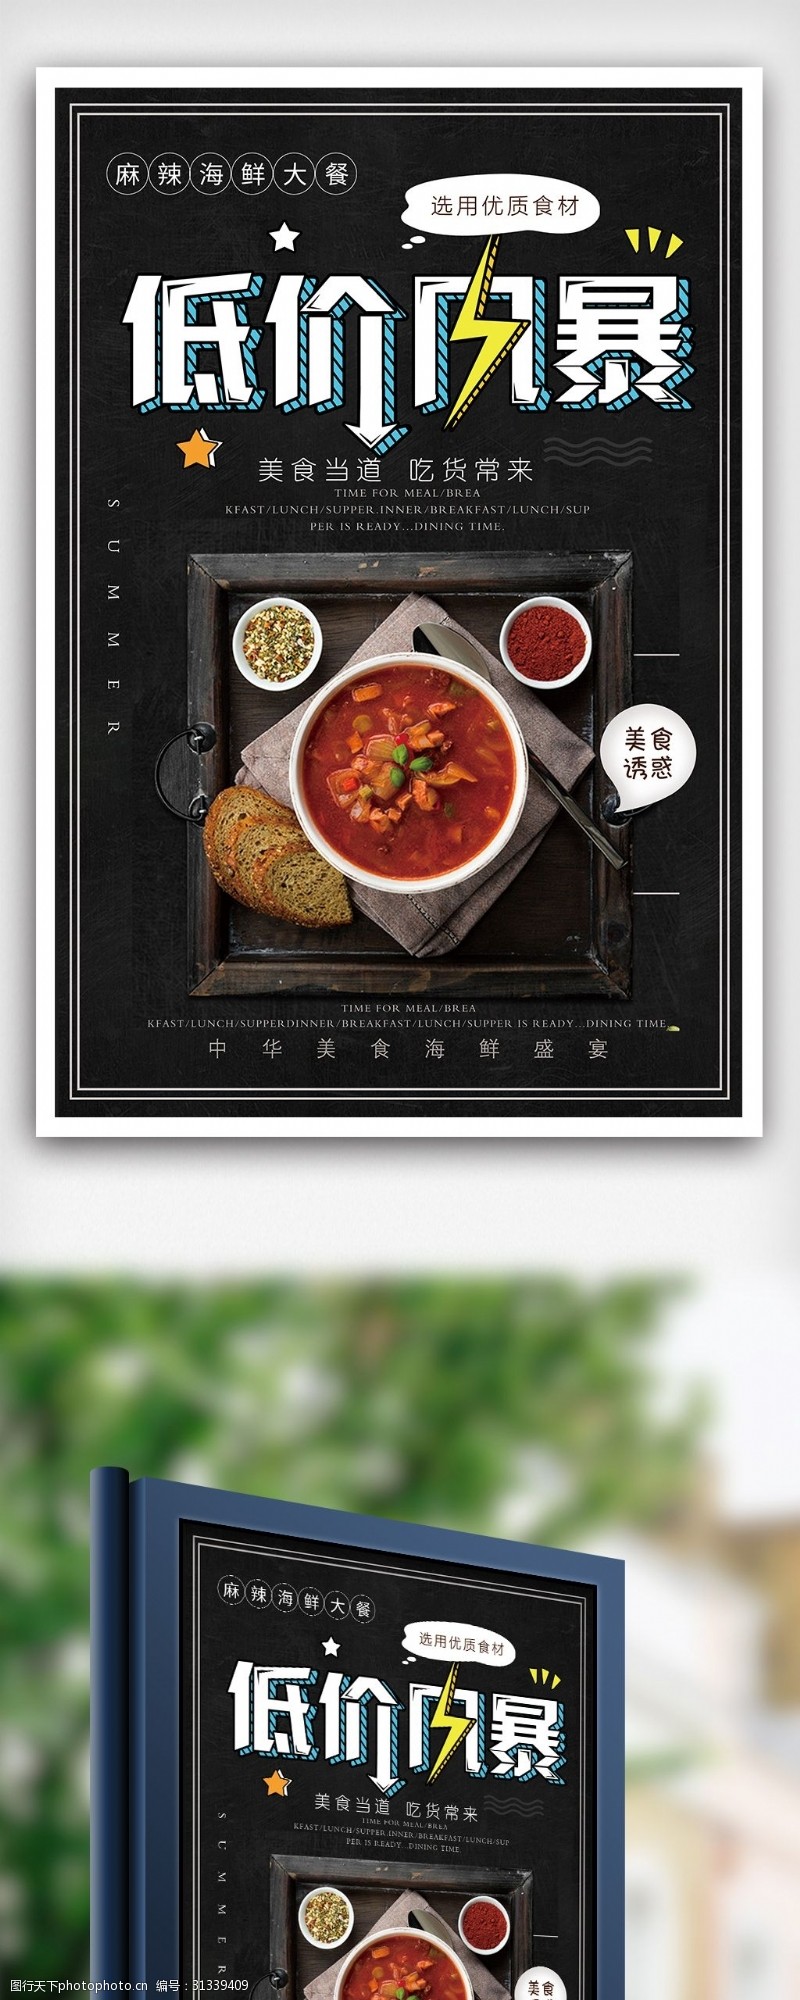 中华美食海报海鲜牛肉酱美食促销宣传海报